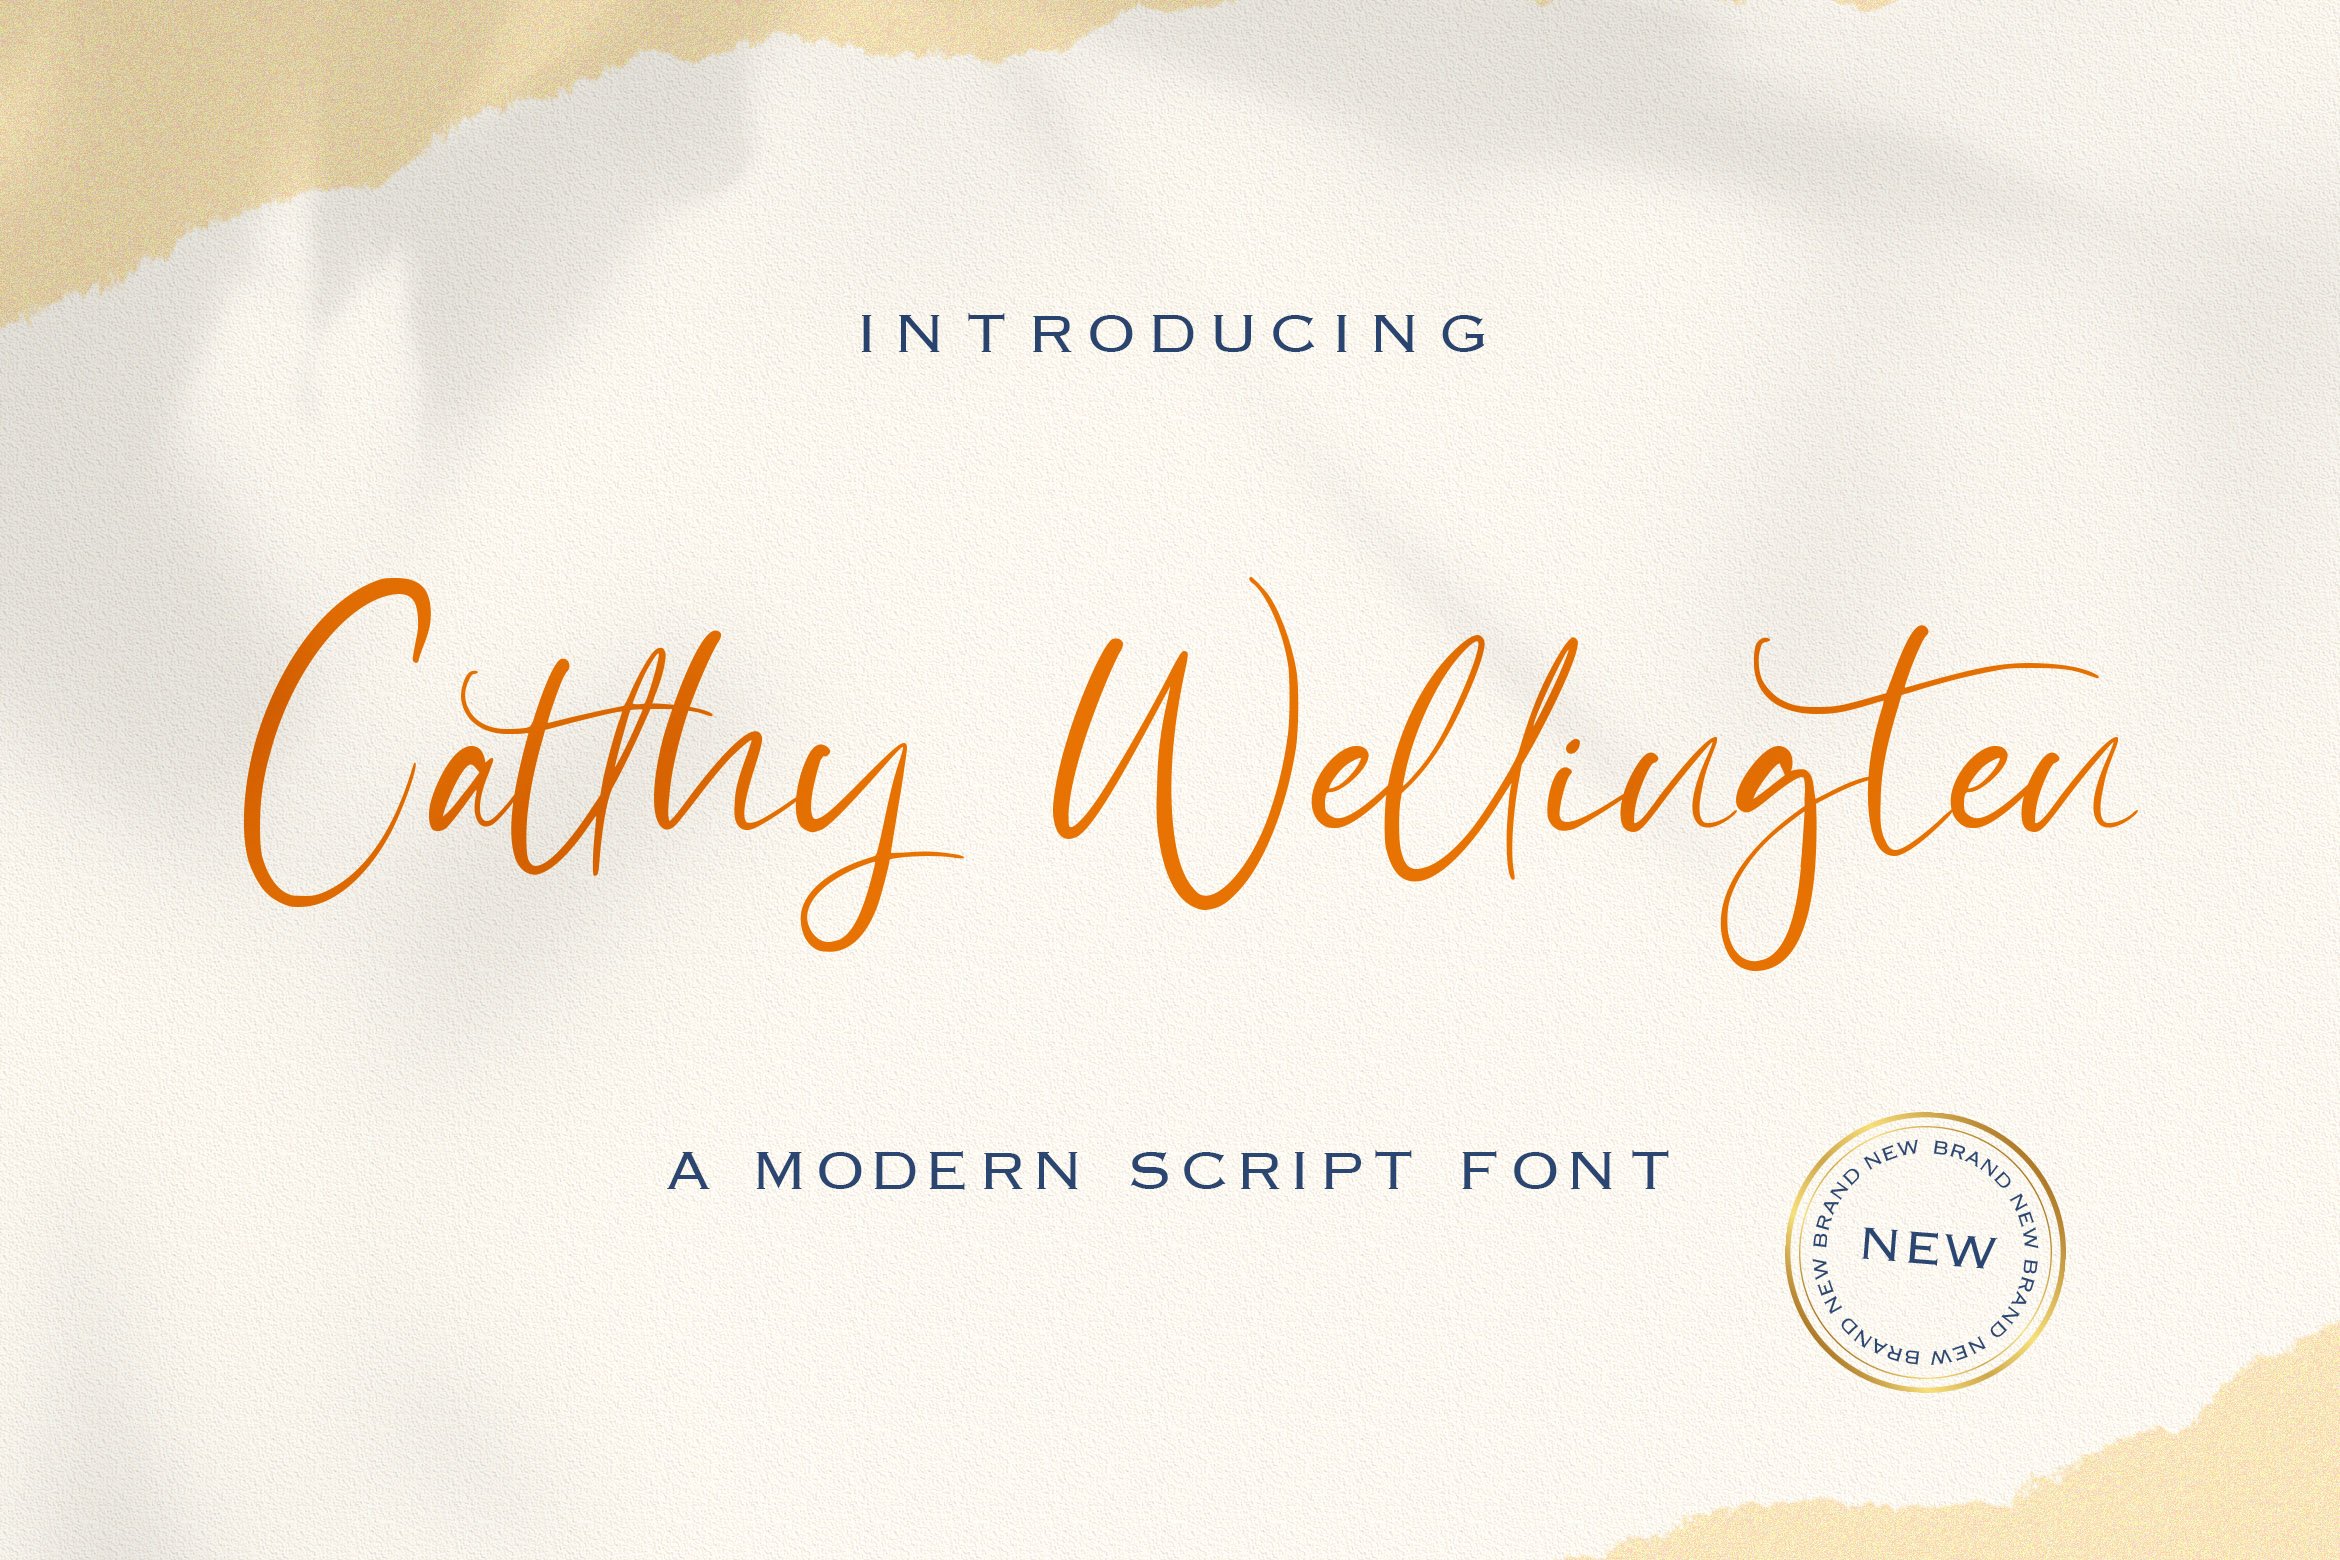 Catthy Wellingten - Handwritten Font cover image.